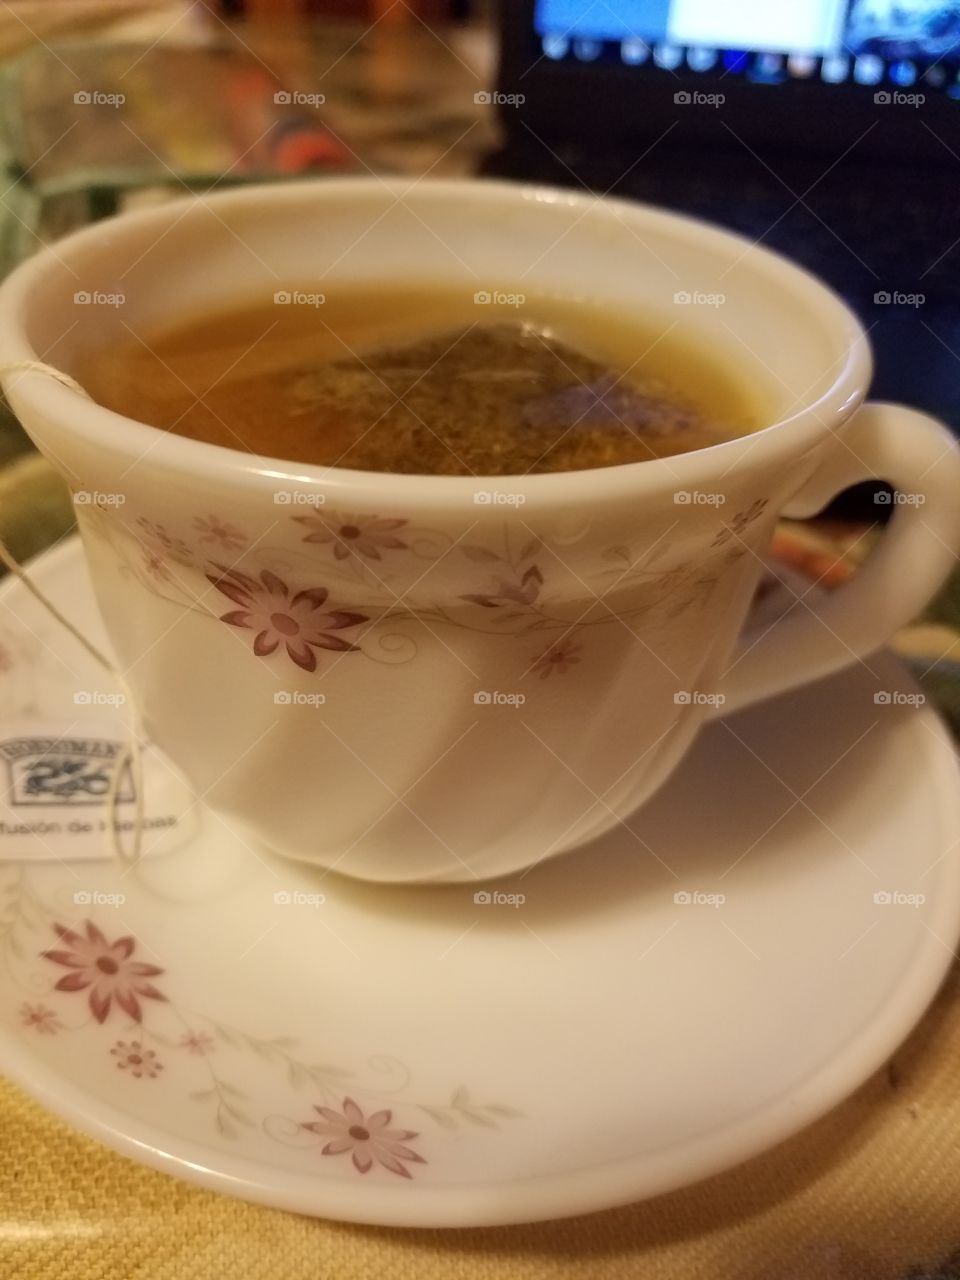 tea time